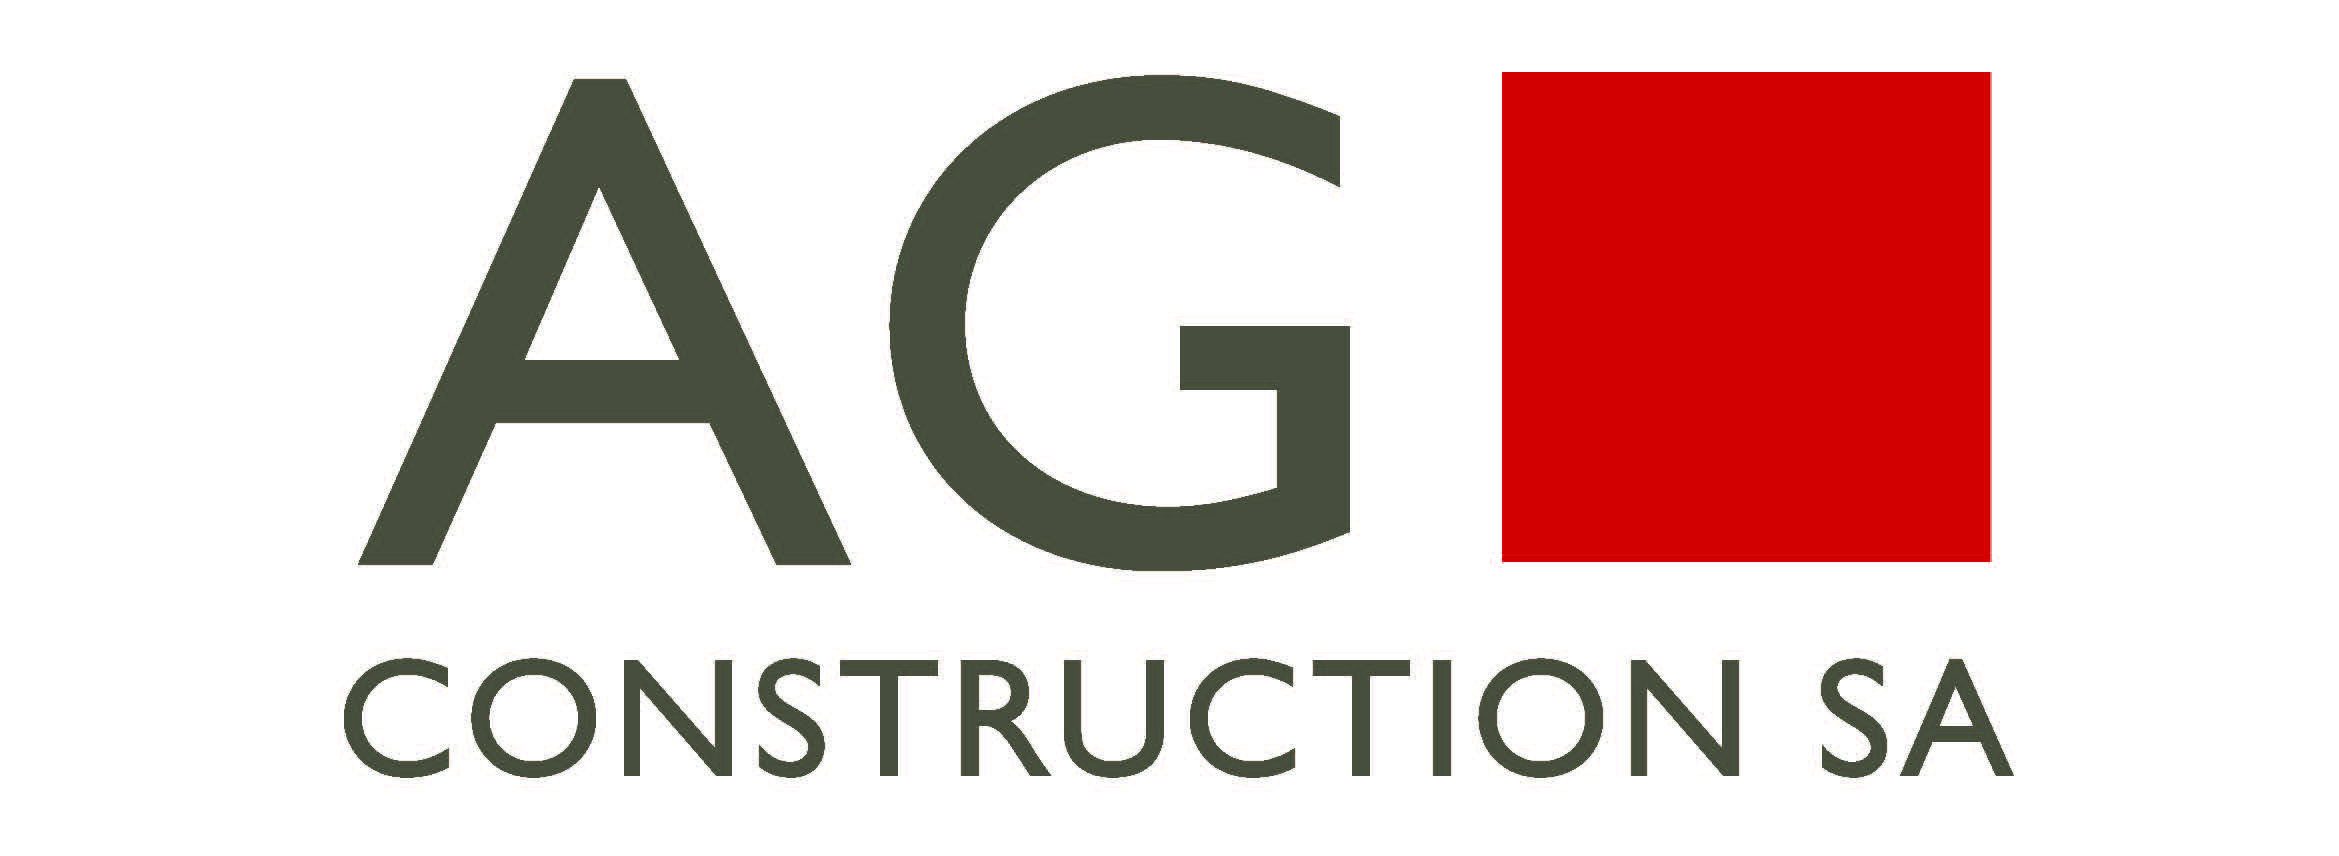 AG Construction SA